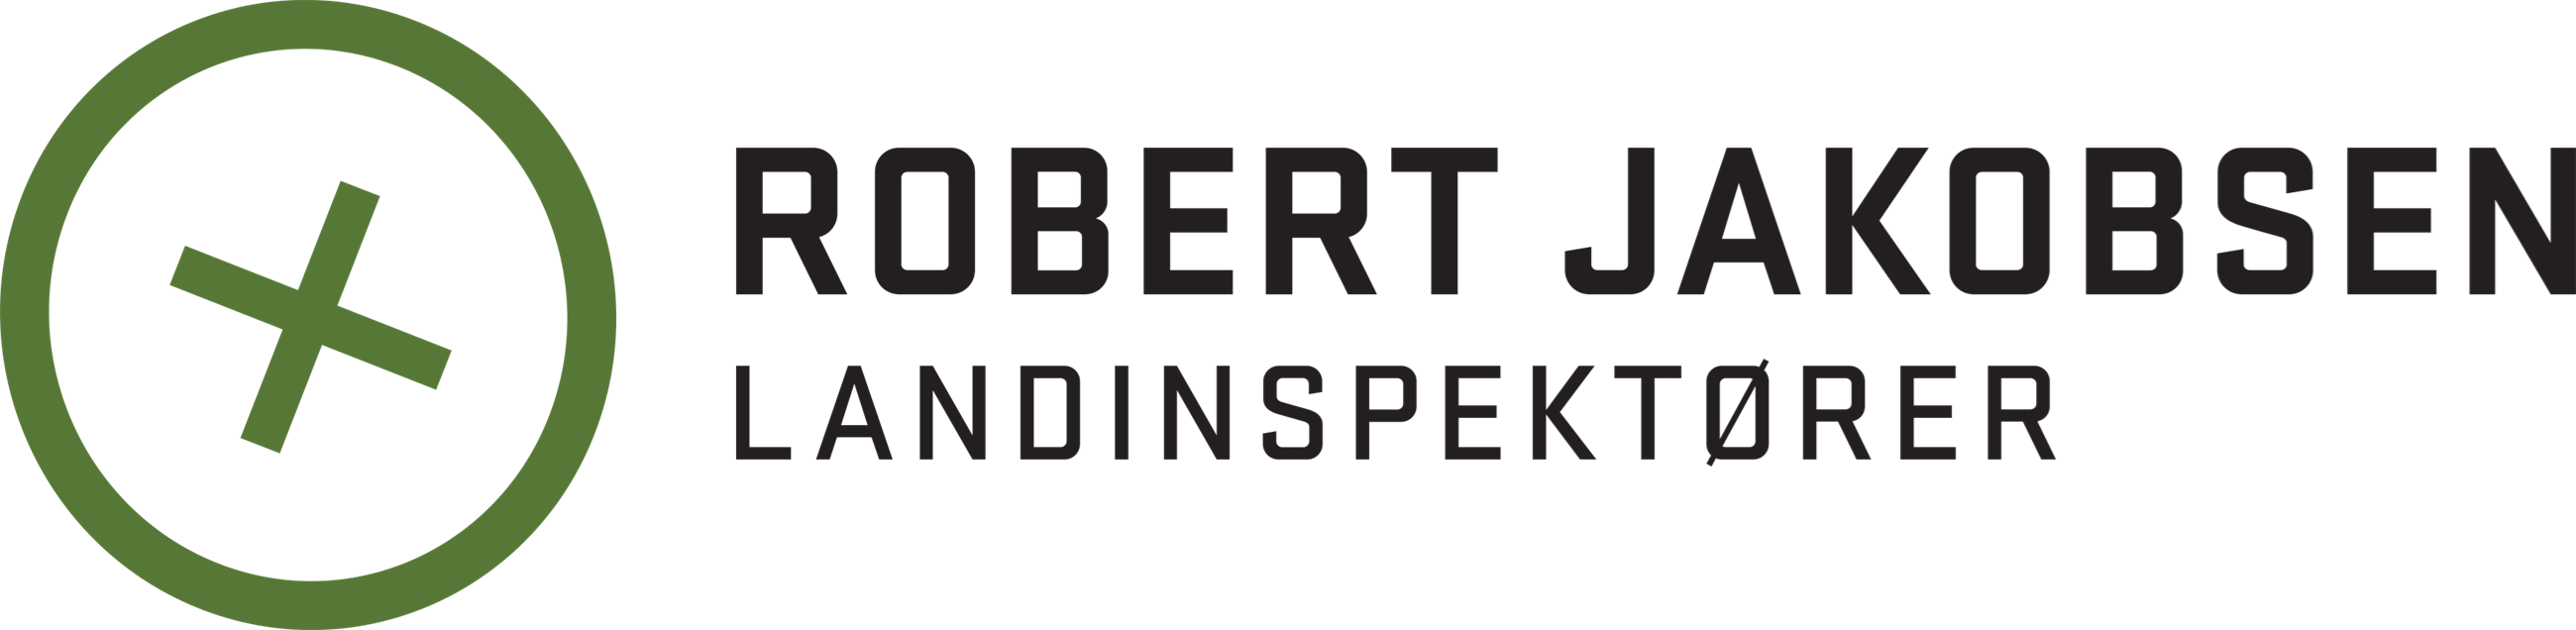 robert-jacobsen-logo-ny